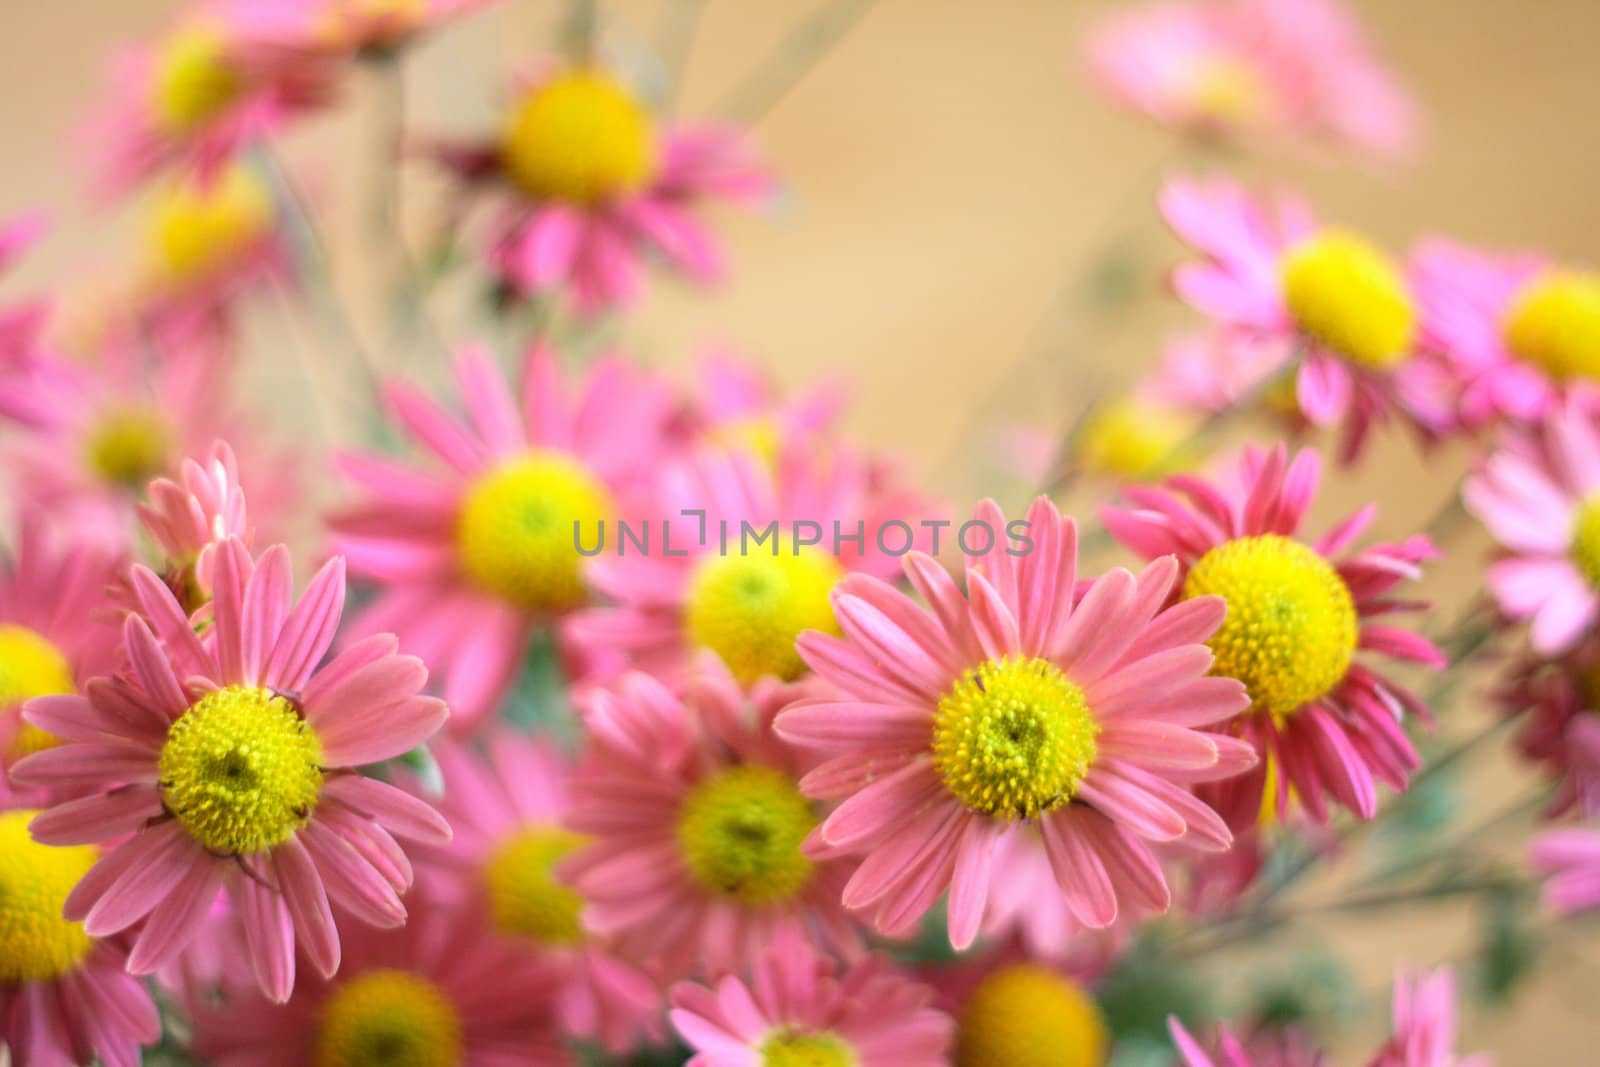 flower background by jonnysek